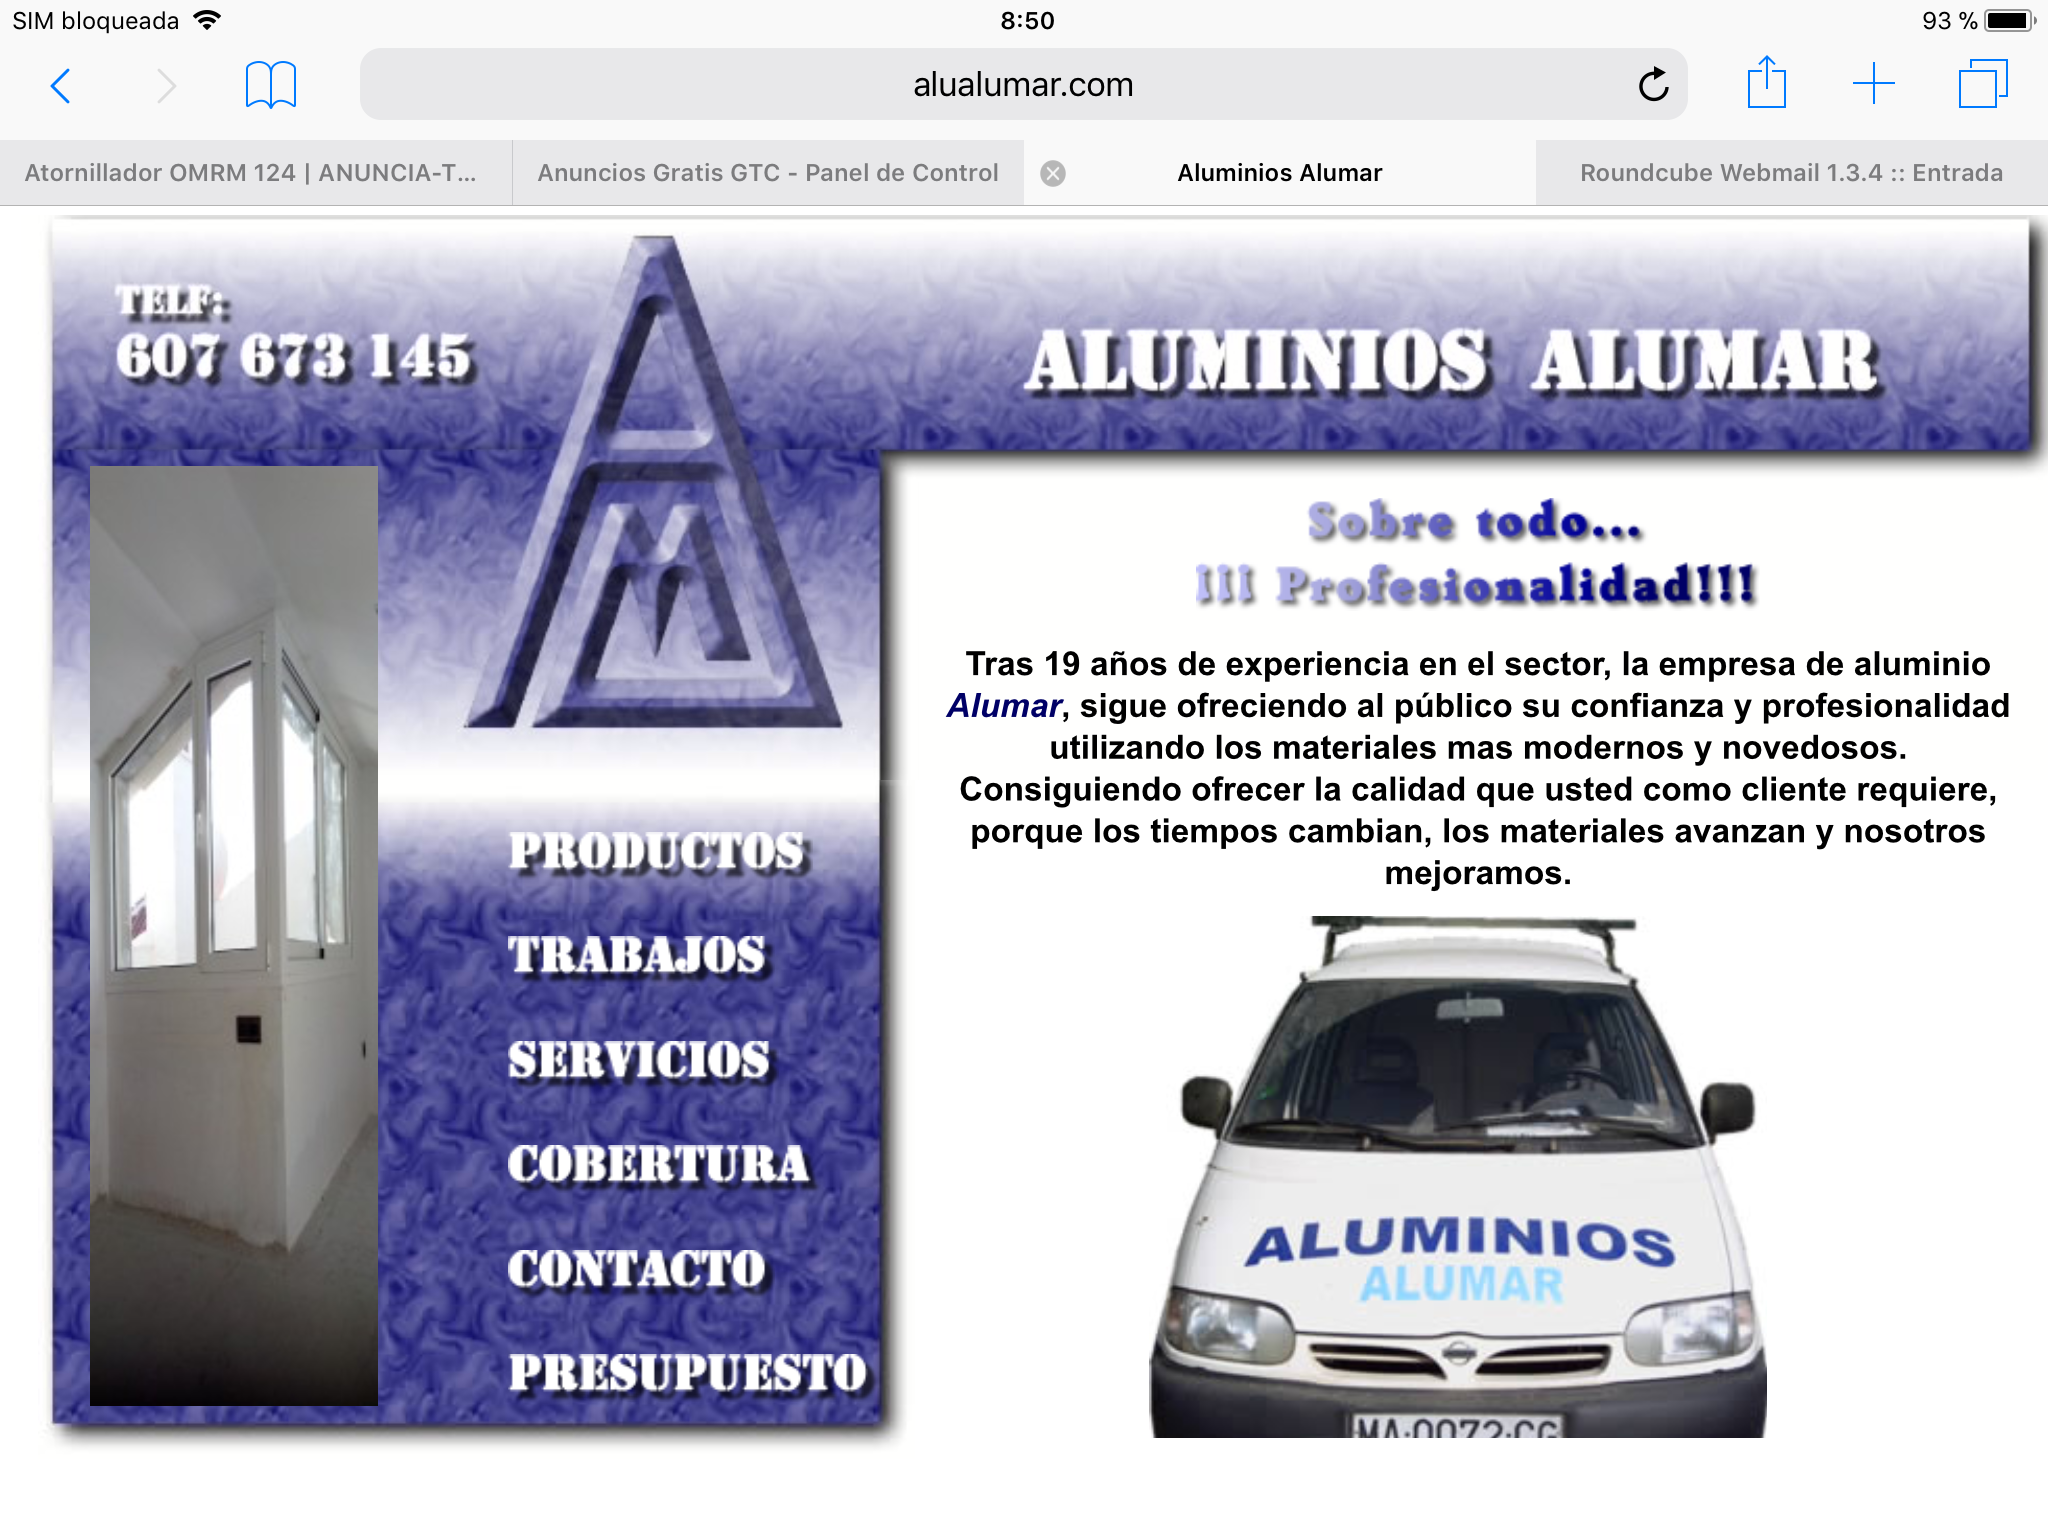 Aluminios Alumar